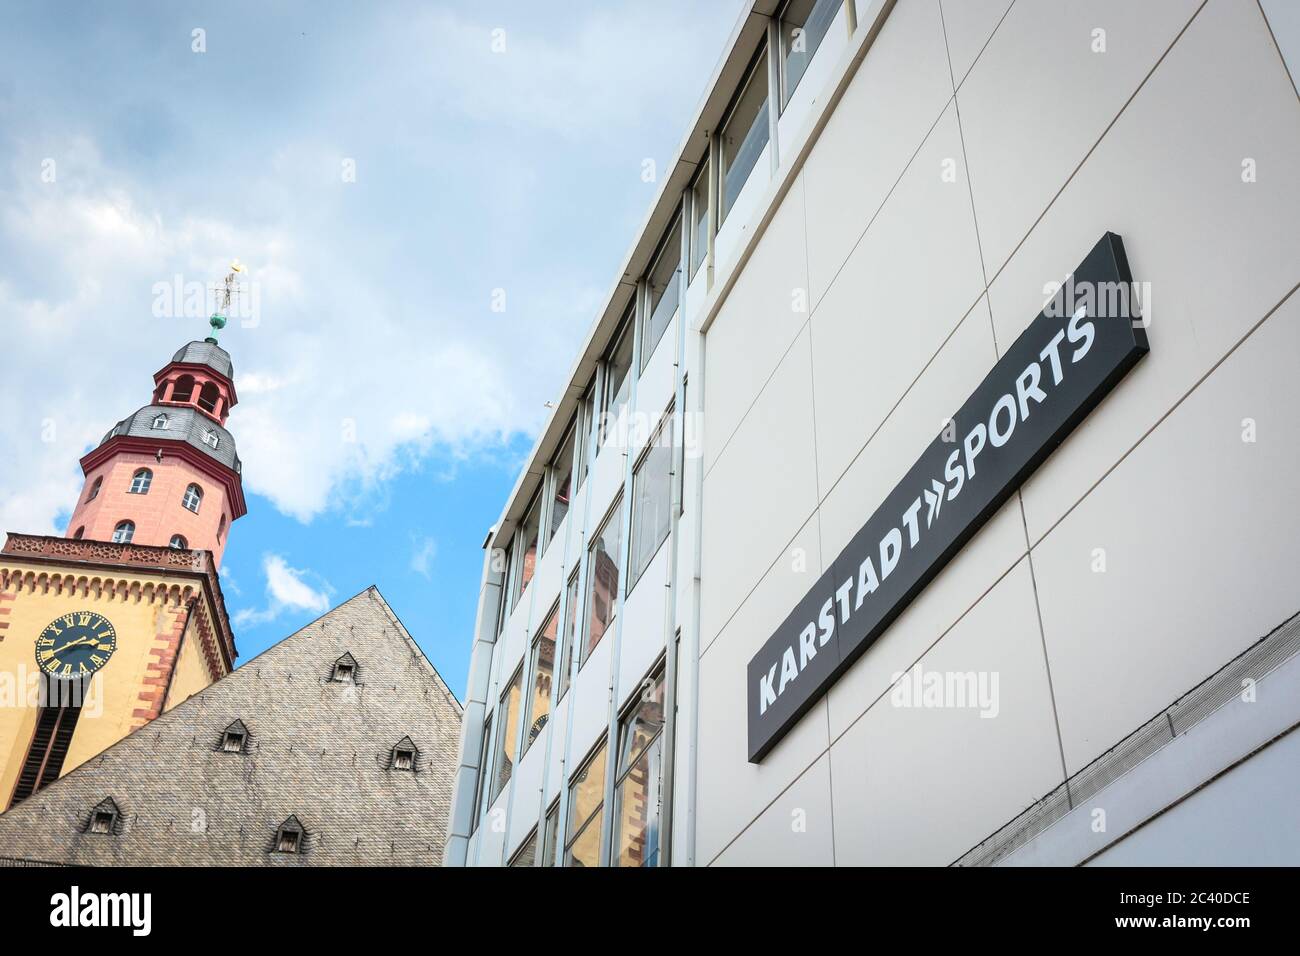 Karstadt Sports, magasin sur la place Hauptwache, Francfort, Allemagne. Le détaillant a annoncé la fermeture de dizaines de magasins pendant la crise du coronavirus. Banque D'Images